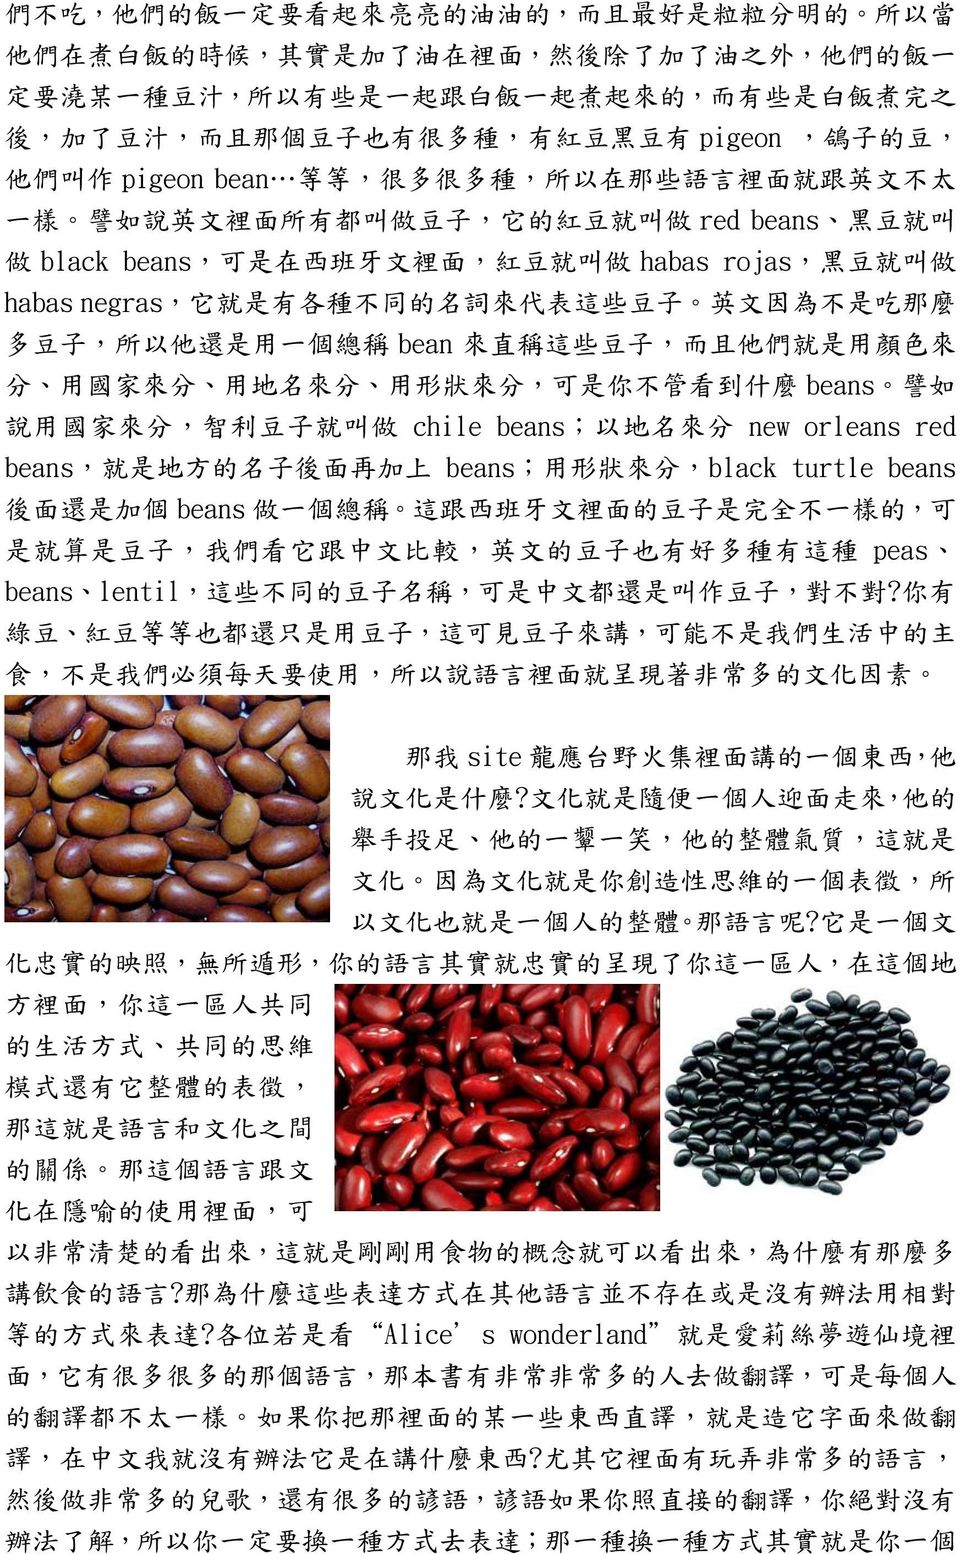 black beans, 可 是 在 西 班 牙 文 裡 面, 紅 豆 就 叫 做 habas rojas, 黑 豆 就 叫 做 habas negras, 它 就 是 有 各 種 不 同 的 名 詞 來 代 表 這 些 豆 子 英 文 因 為 不 是 吃 那 麼 多 豆 子, 所 以 他 還 是 用 一 個 總 稱 bean 來 直 稱 這 些 豆 子, 而 且 他 們 就 是 用 顏 色 來